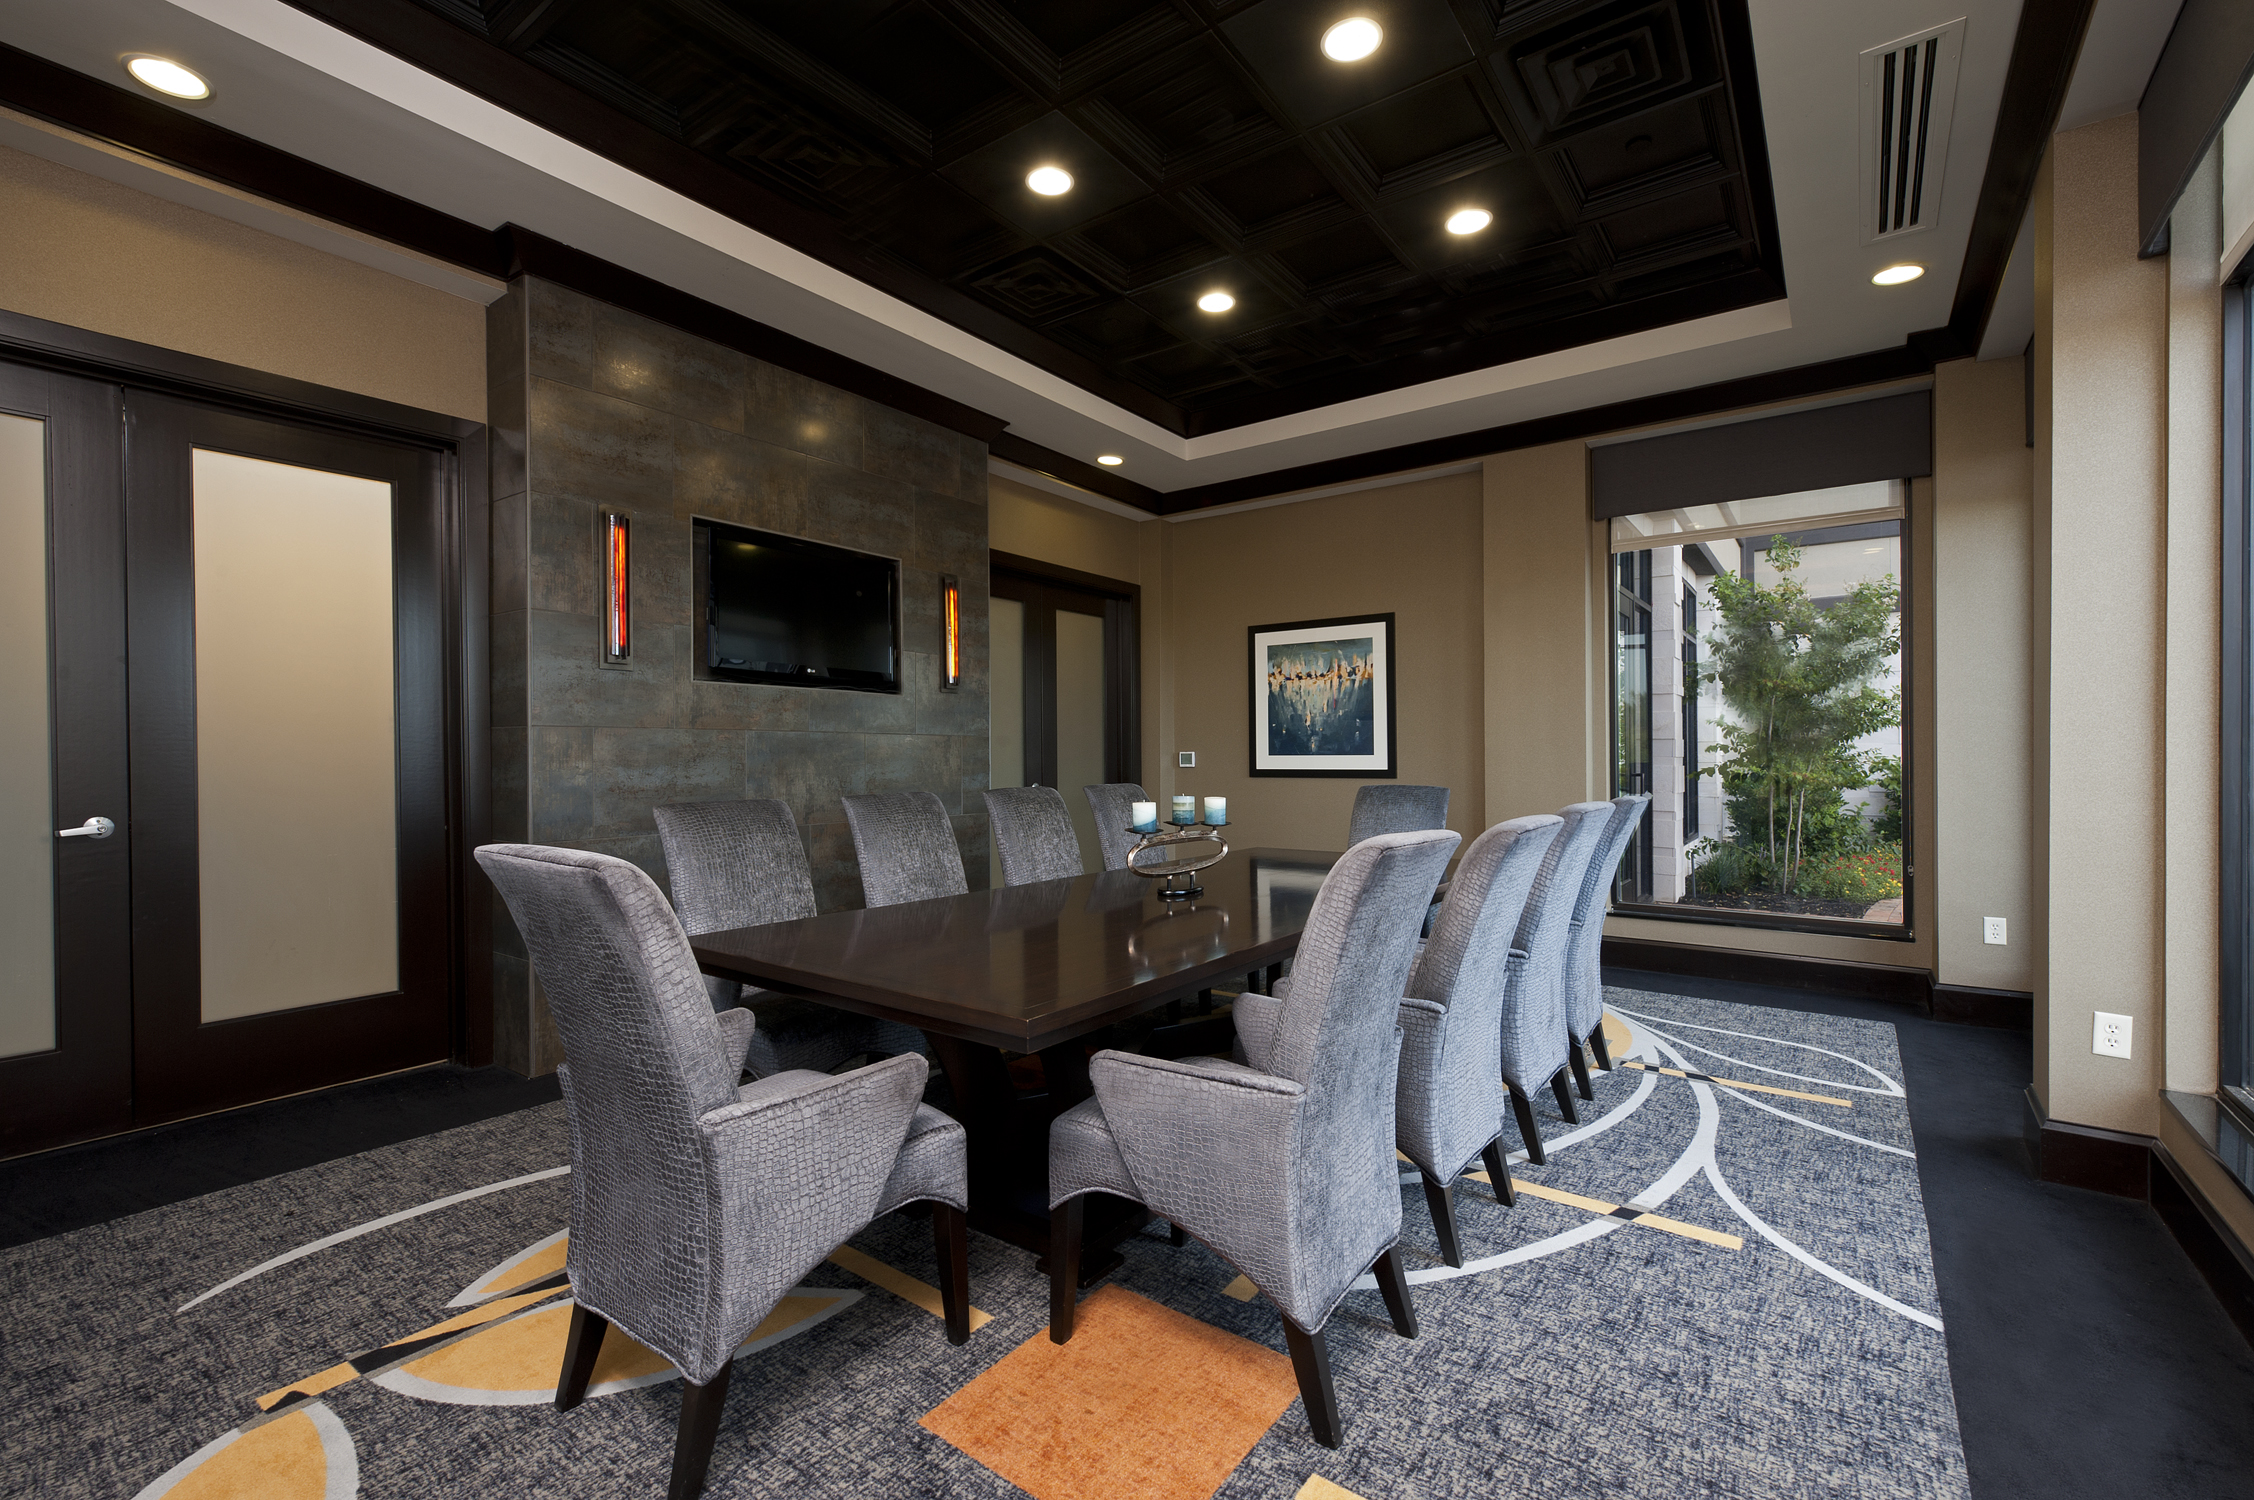 Meeting Space - Boardroom 